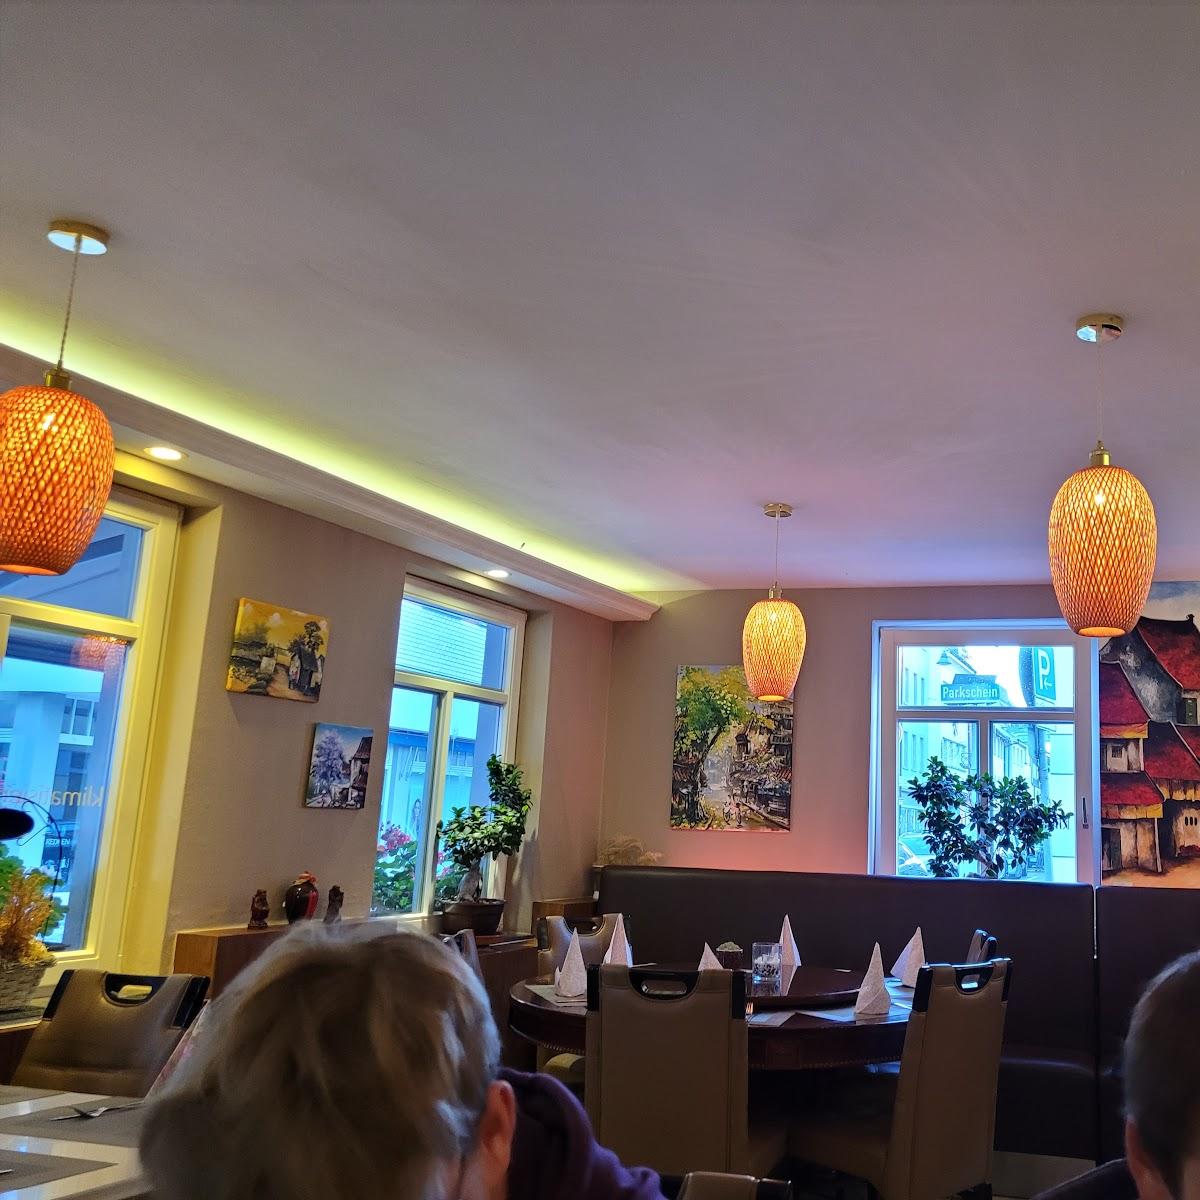 Restaurant "Zen House" in Ravensburg